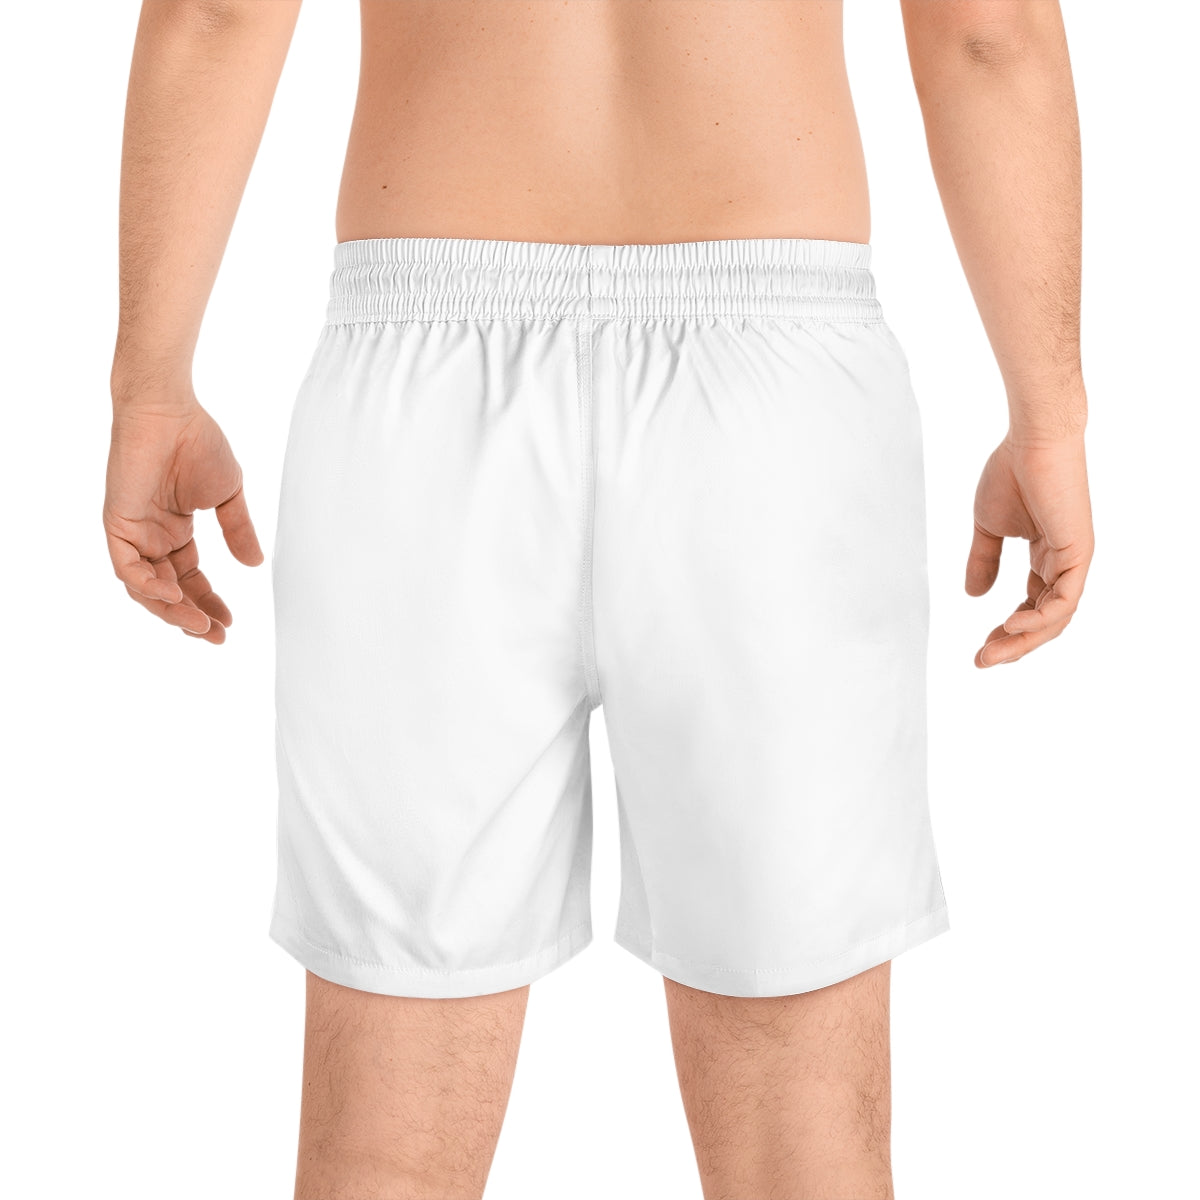 Men's Mid-Length Swim Shorts (AOP) - TwistedWrapper